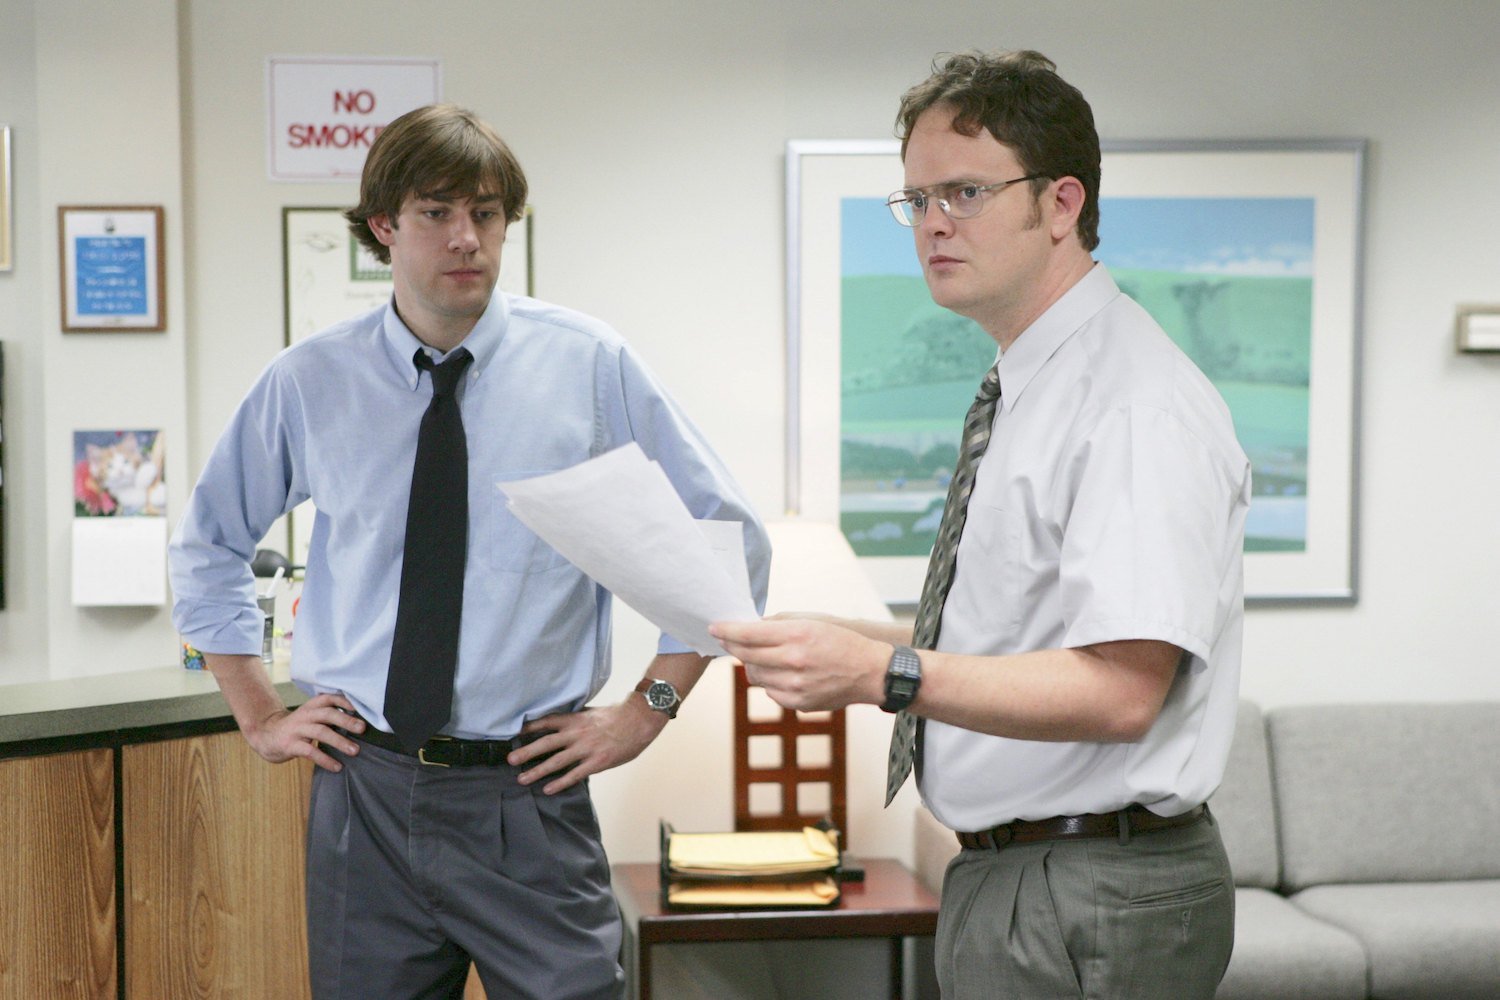 'The Office': John Krasinski as Jim Halpert and Rainn Wilson as Dwight Schrute